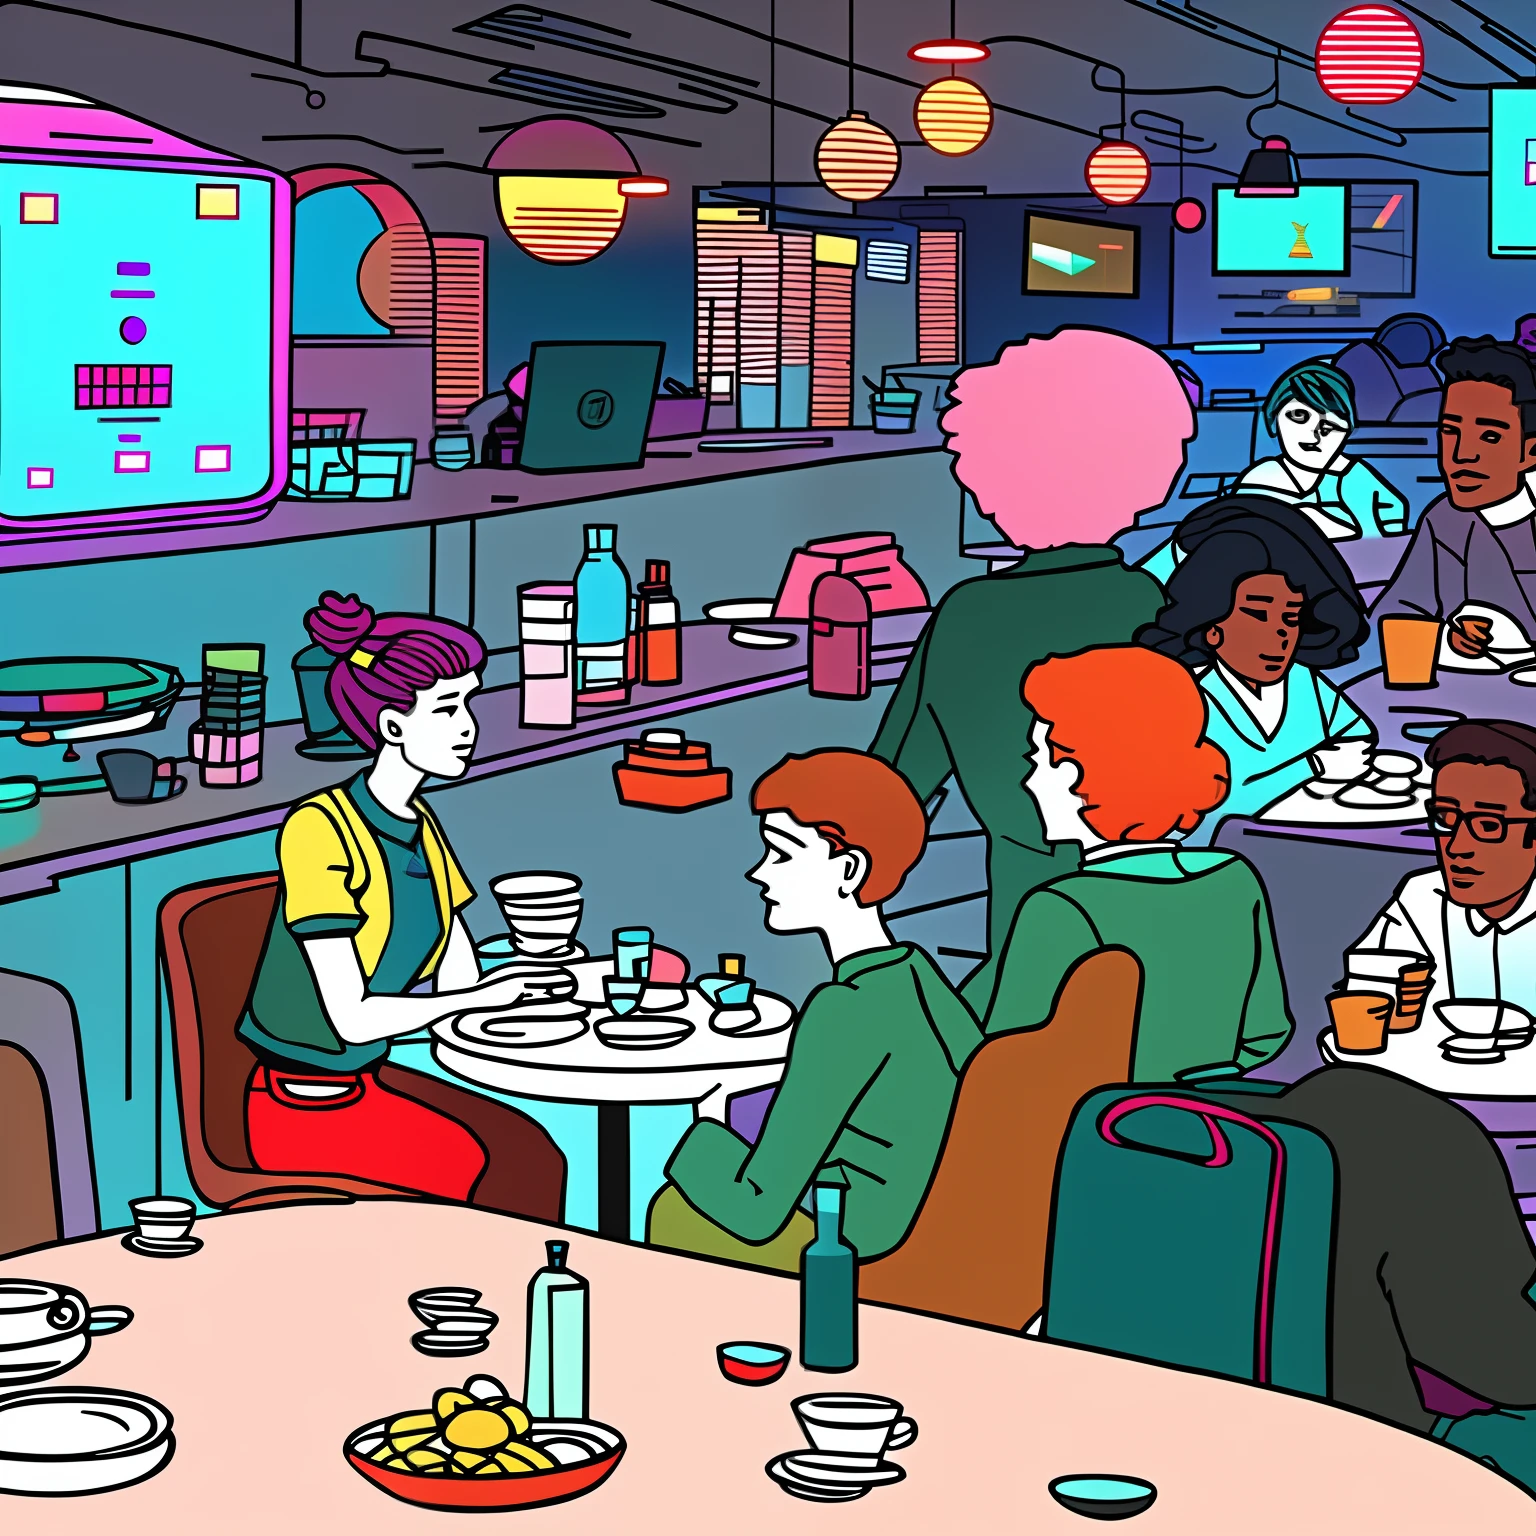 한 무리의 외계인 만화 삽화와 함께 테이블에 앉아 있는 여자，젊은 남자와 여자, 사이버펑크 베이퍼웨이브, 증기파 만화, [ 신디웨이브 아트 스타일 ], 증기파 SF, 에일리언 바